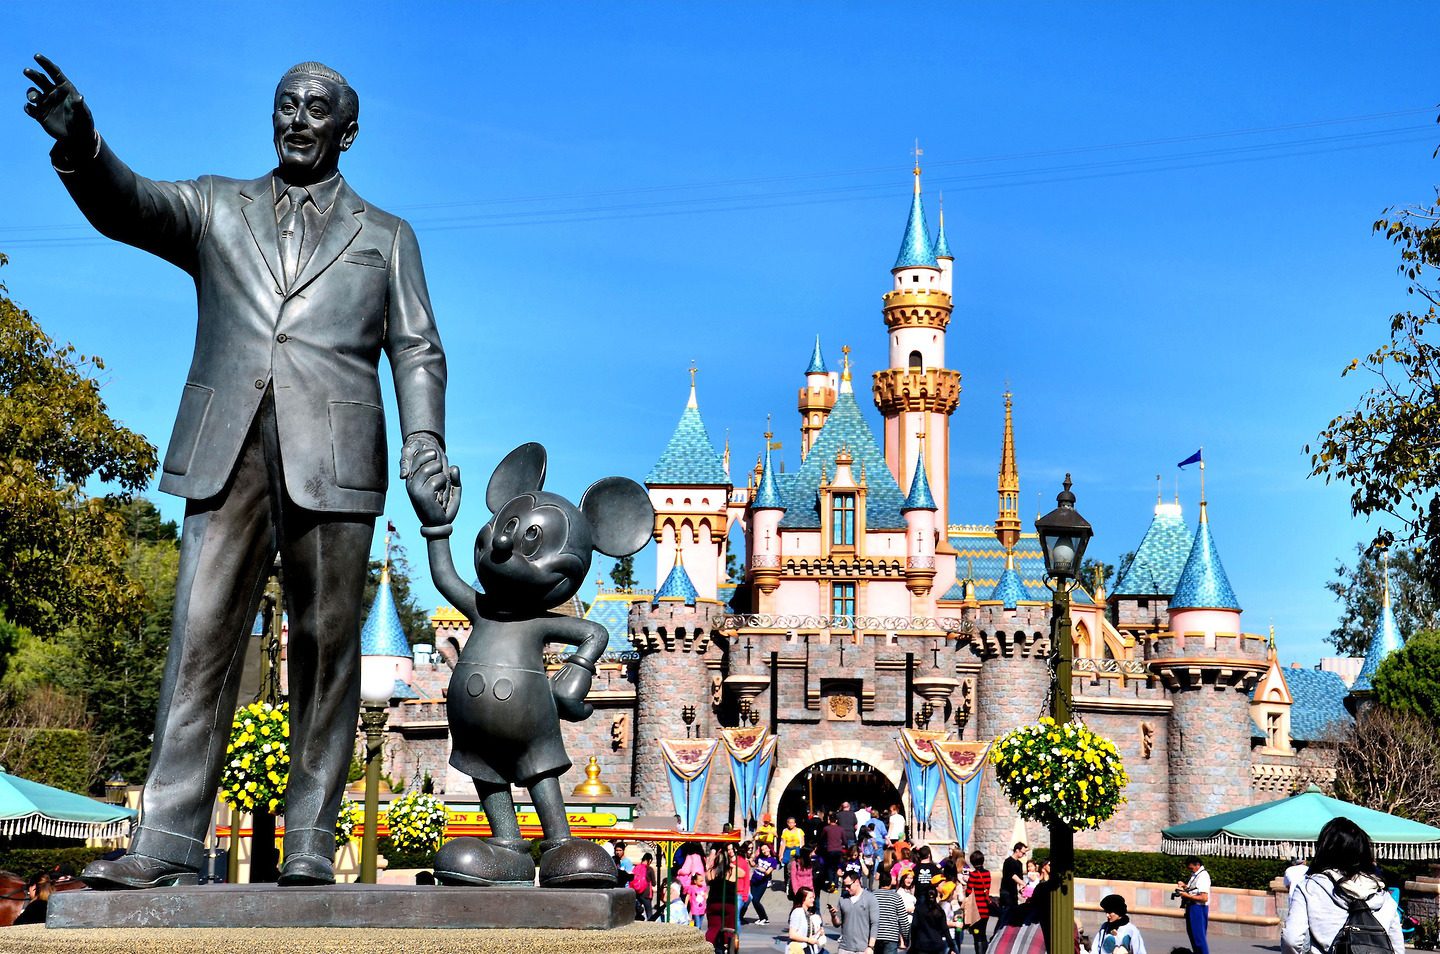 Уолт дисней микки. Уолт Дисней Диснейленд. Диснейленд (Walt Disney World), Флорида. Статуя Уолта Диснея. Памятник Уолту Диснею и Микки Маусу.